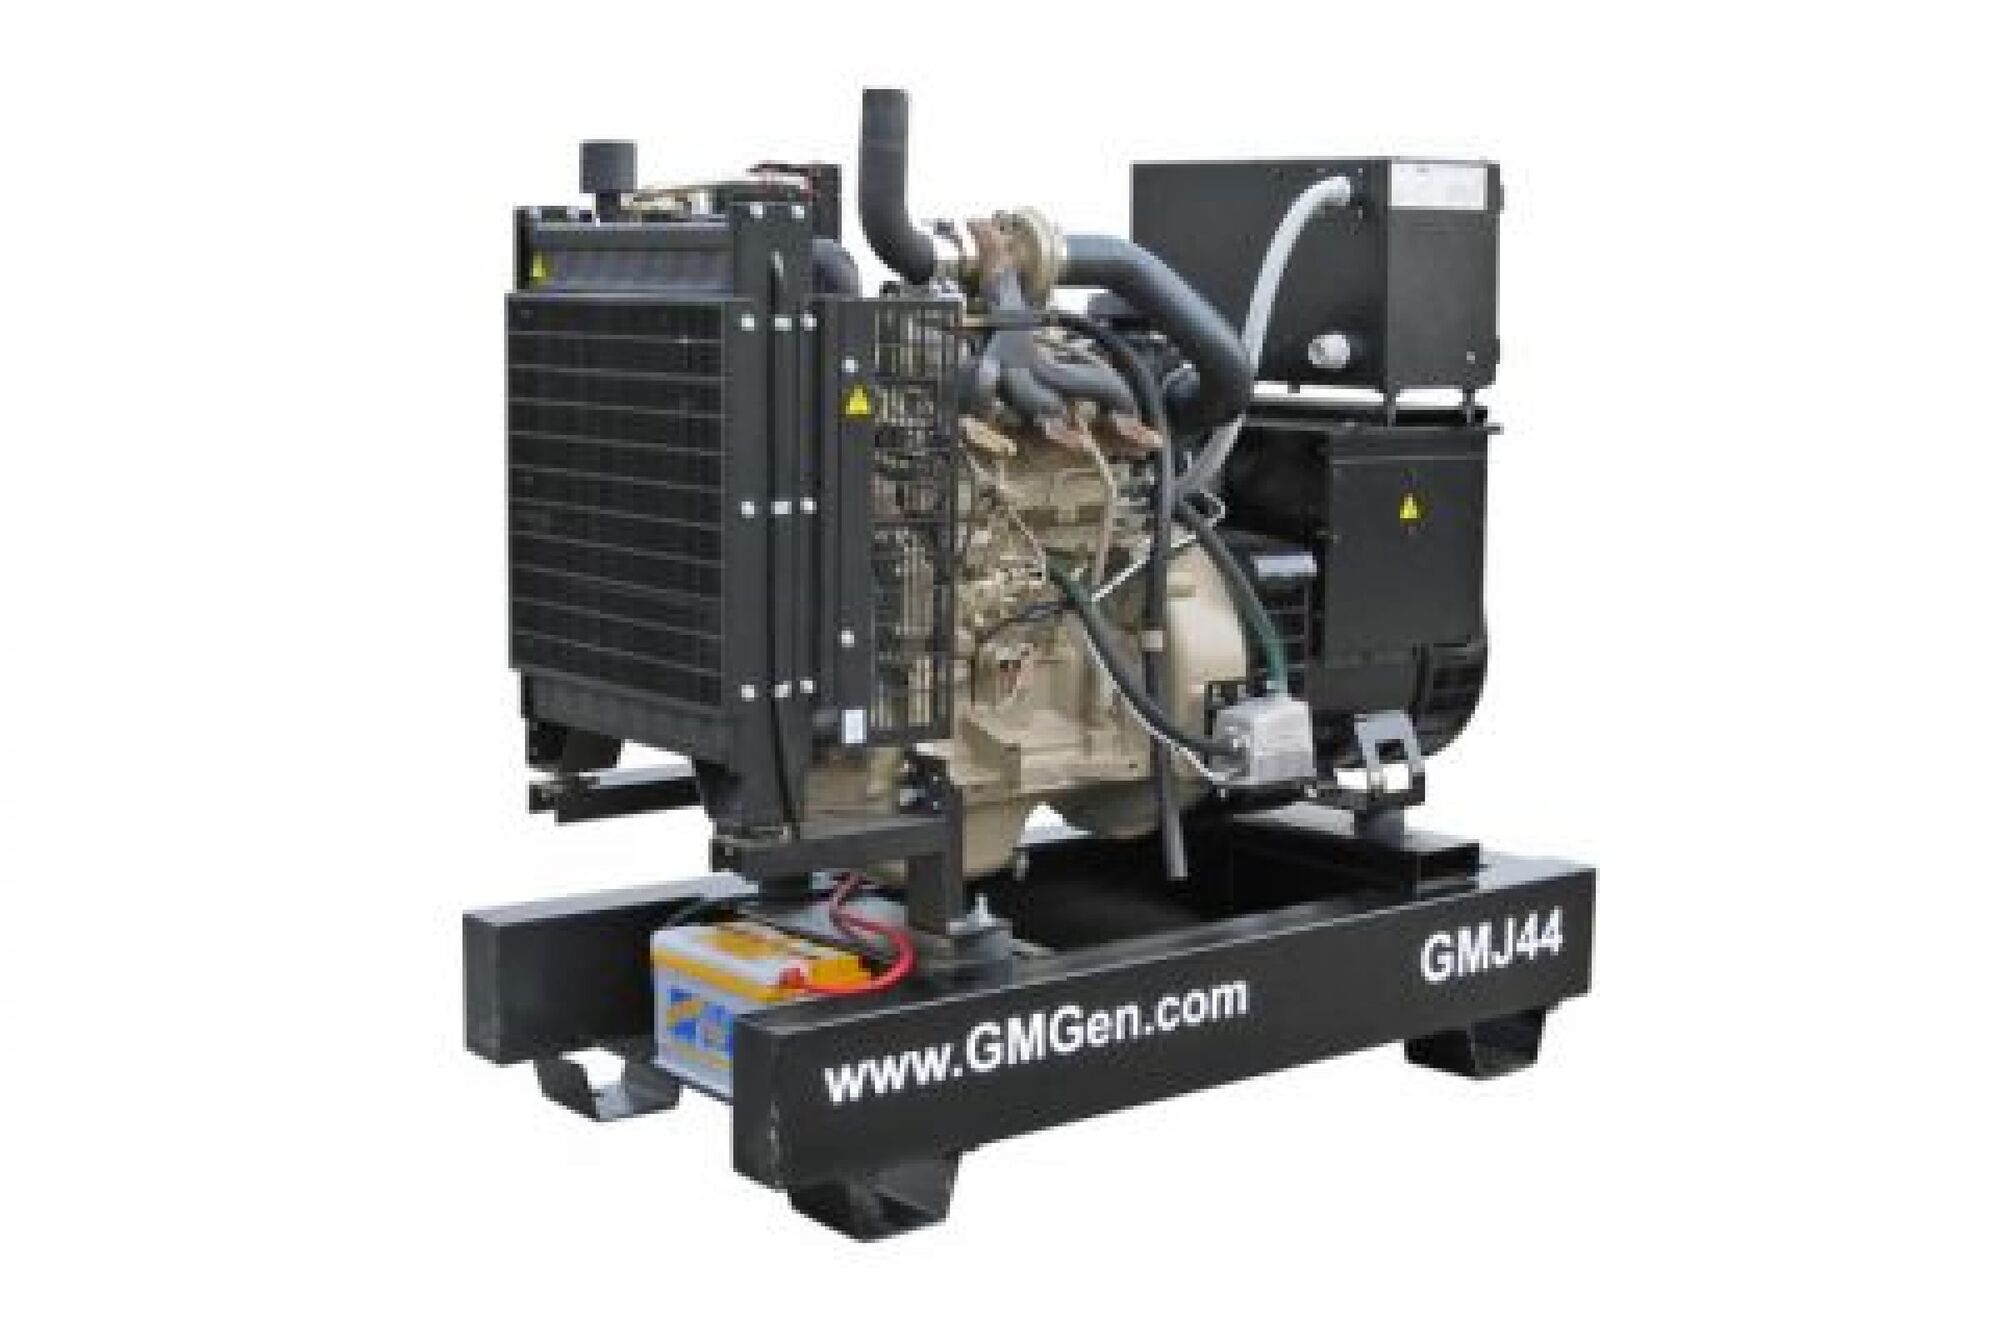 Дизель генератор GMGen Power Systems GMJ44 32 кВт, 380/220 В 502014